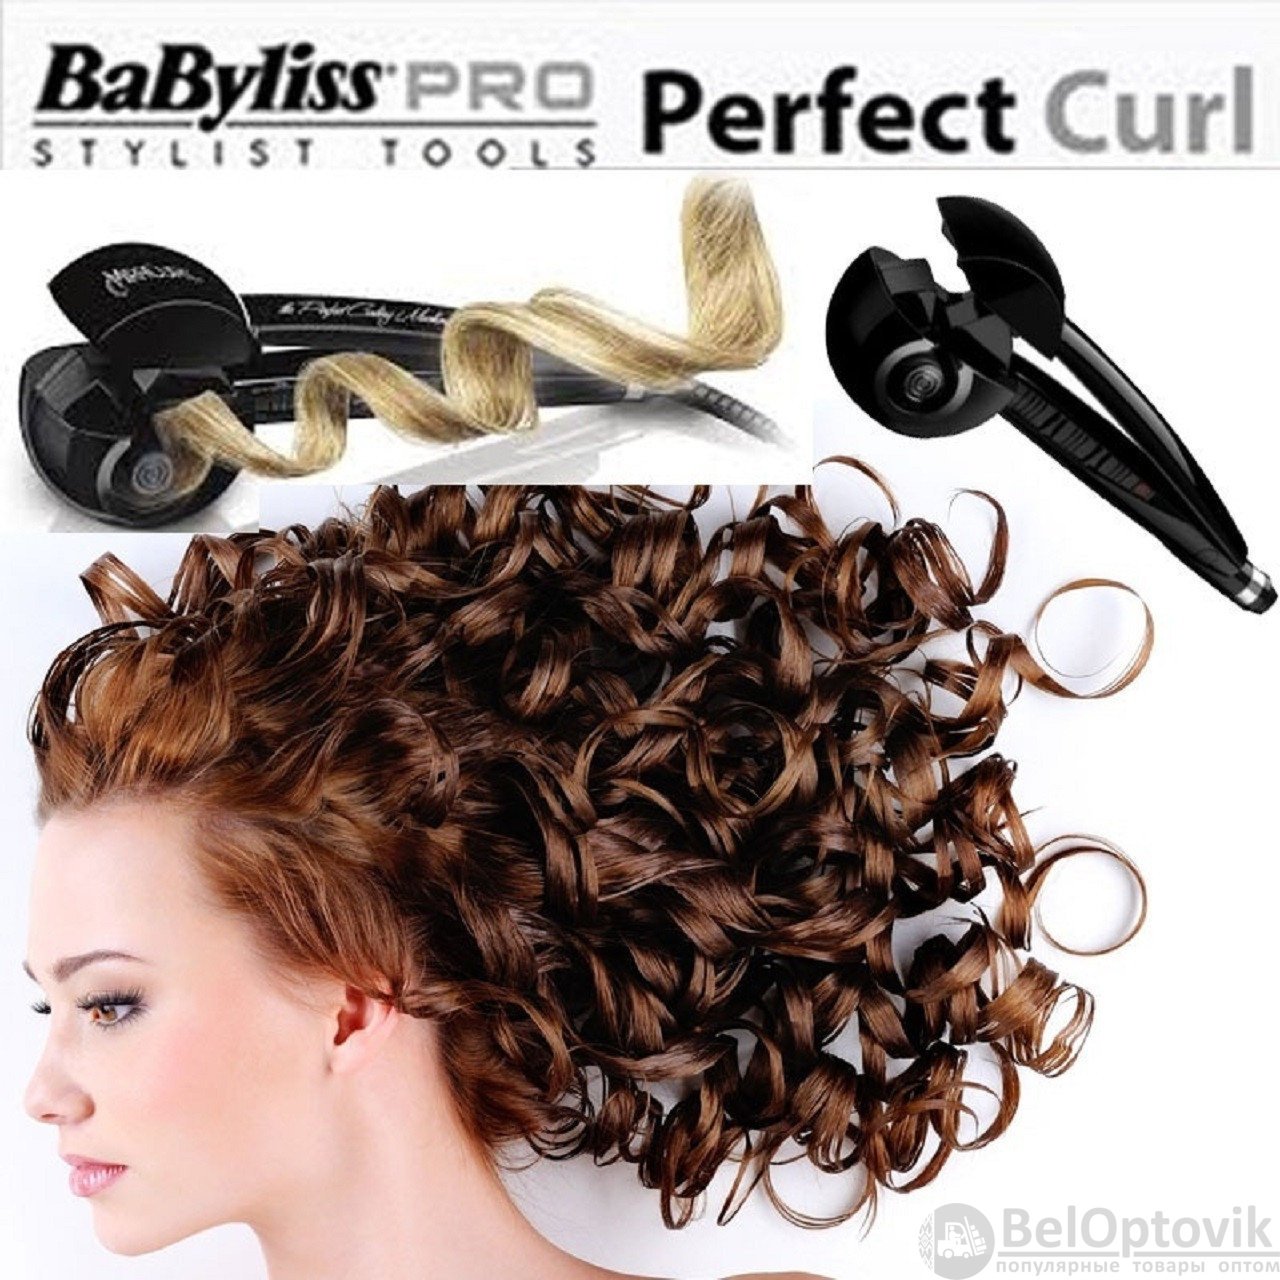 Curl port. Плойка BABYLISS Pro perfect. BABYLISS Pro perfect Curl. BABYLISS Pro Curl Styler. Бэбилисс стайлер для локонов автоматическая.